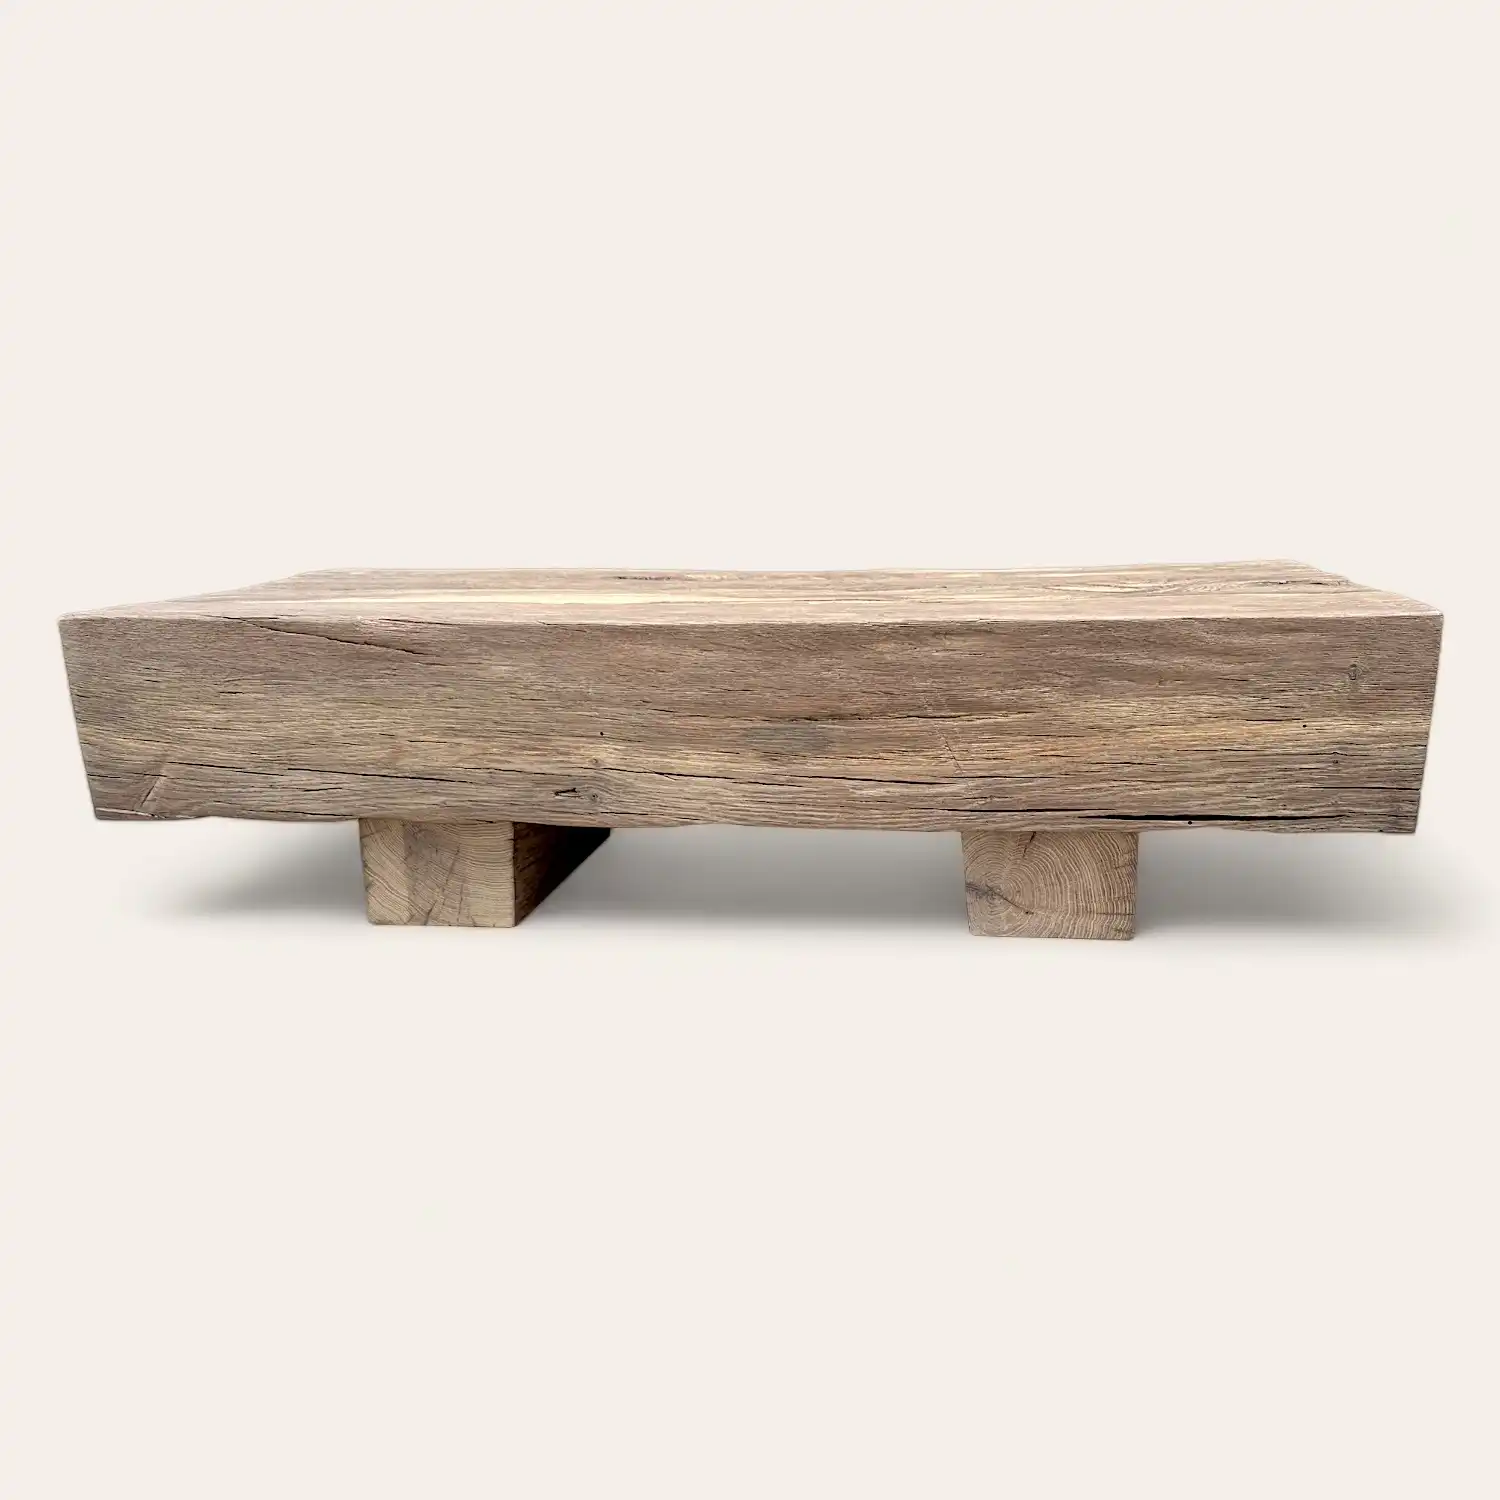  Une table basse rustique en bois sur fond blanc. 